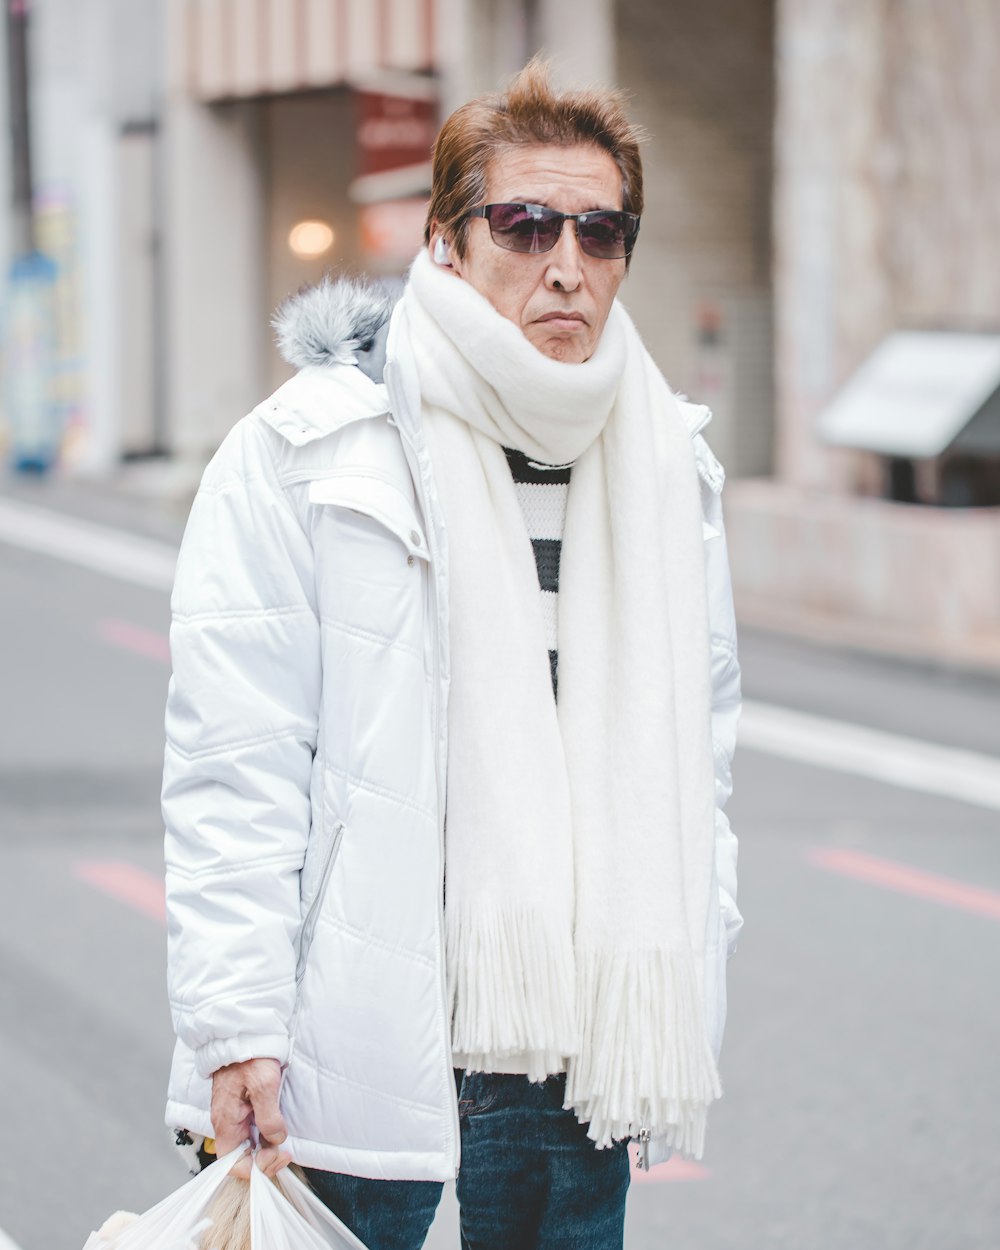 흰 파카 재킷과 흰 스카프를 두른 남자가 낮에 거리를 걷고 있다.